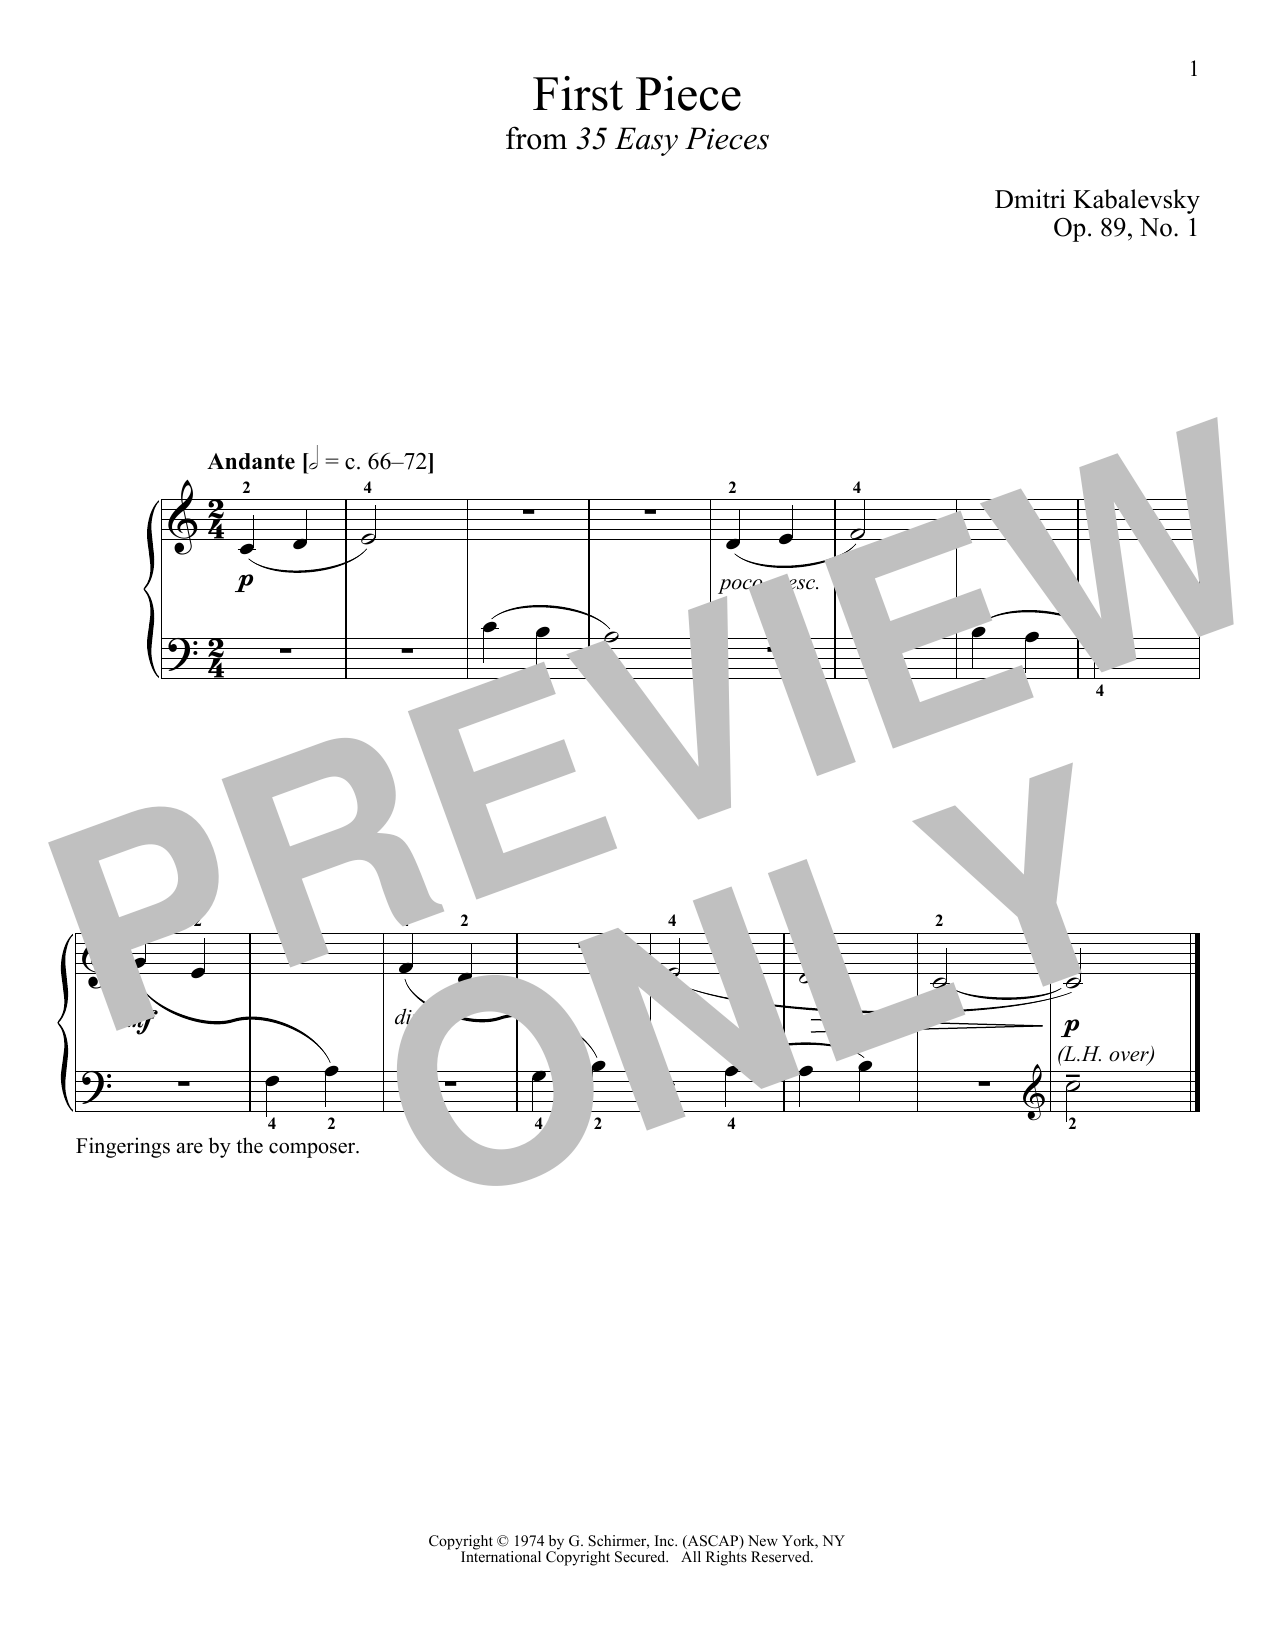 Download Dmitri Kabalevsky First Piece, Op. 89, No. 1 Sheet Music